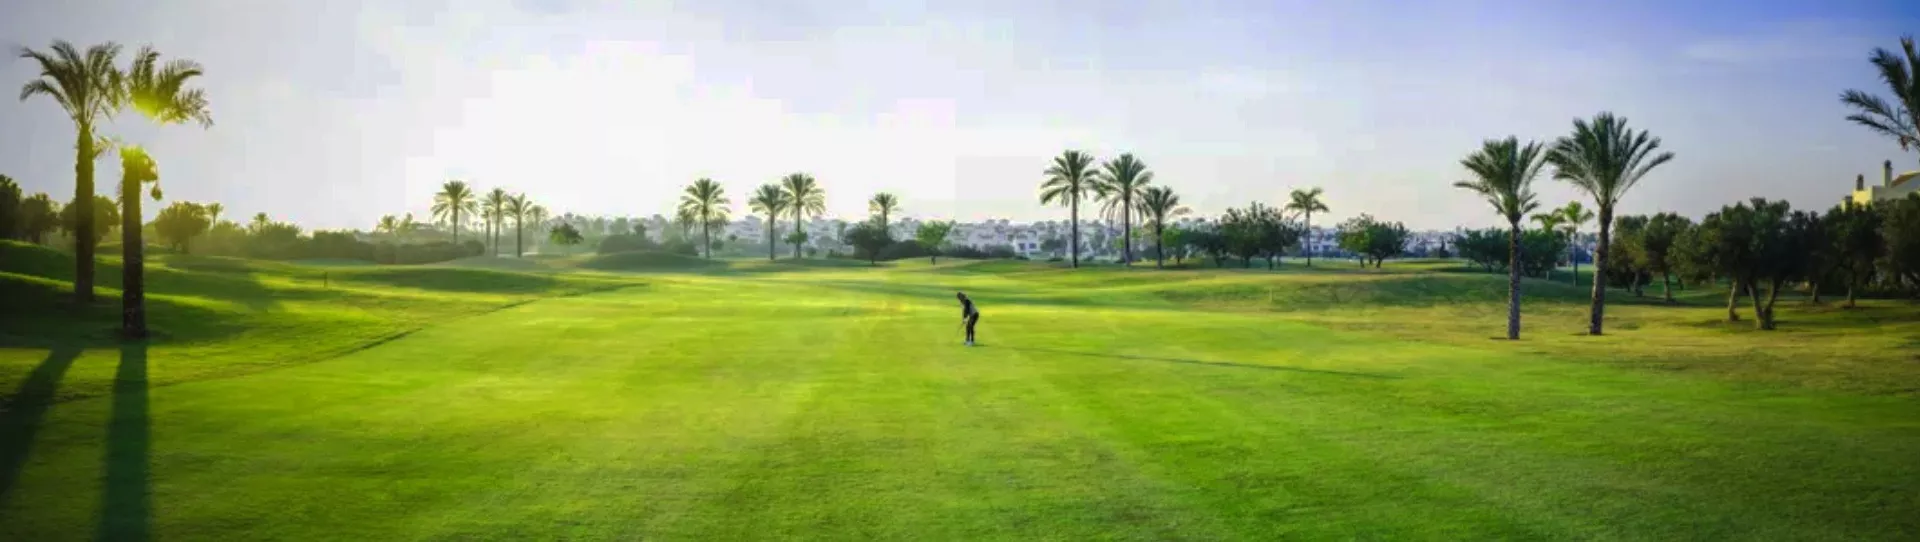 Spain golf courses - Roda Golf Course - Photo 2